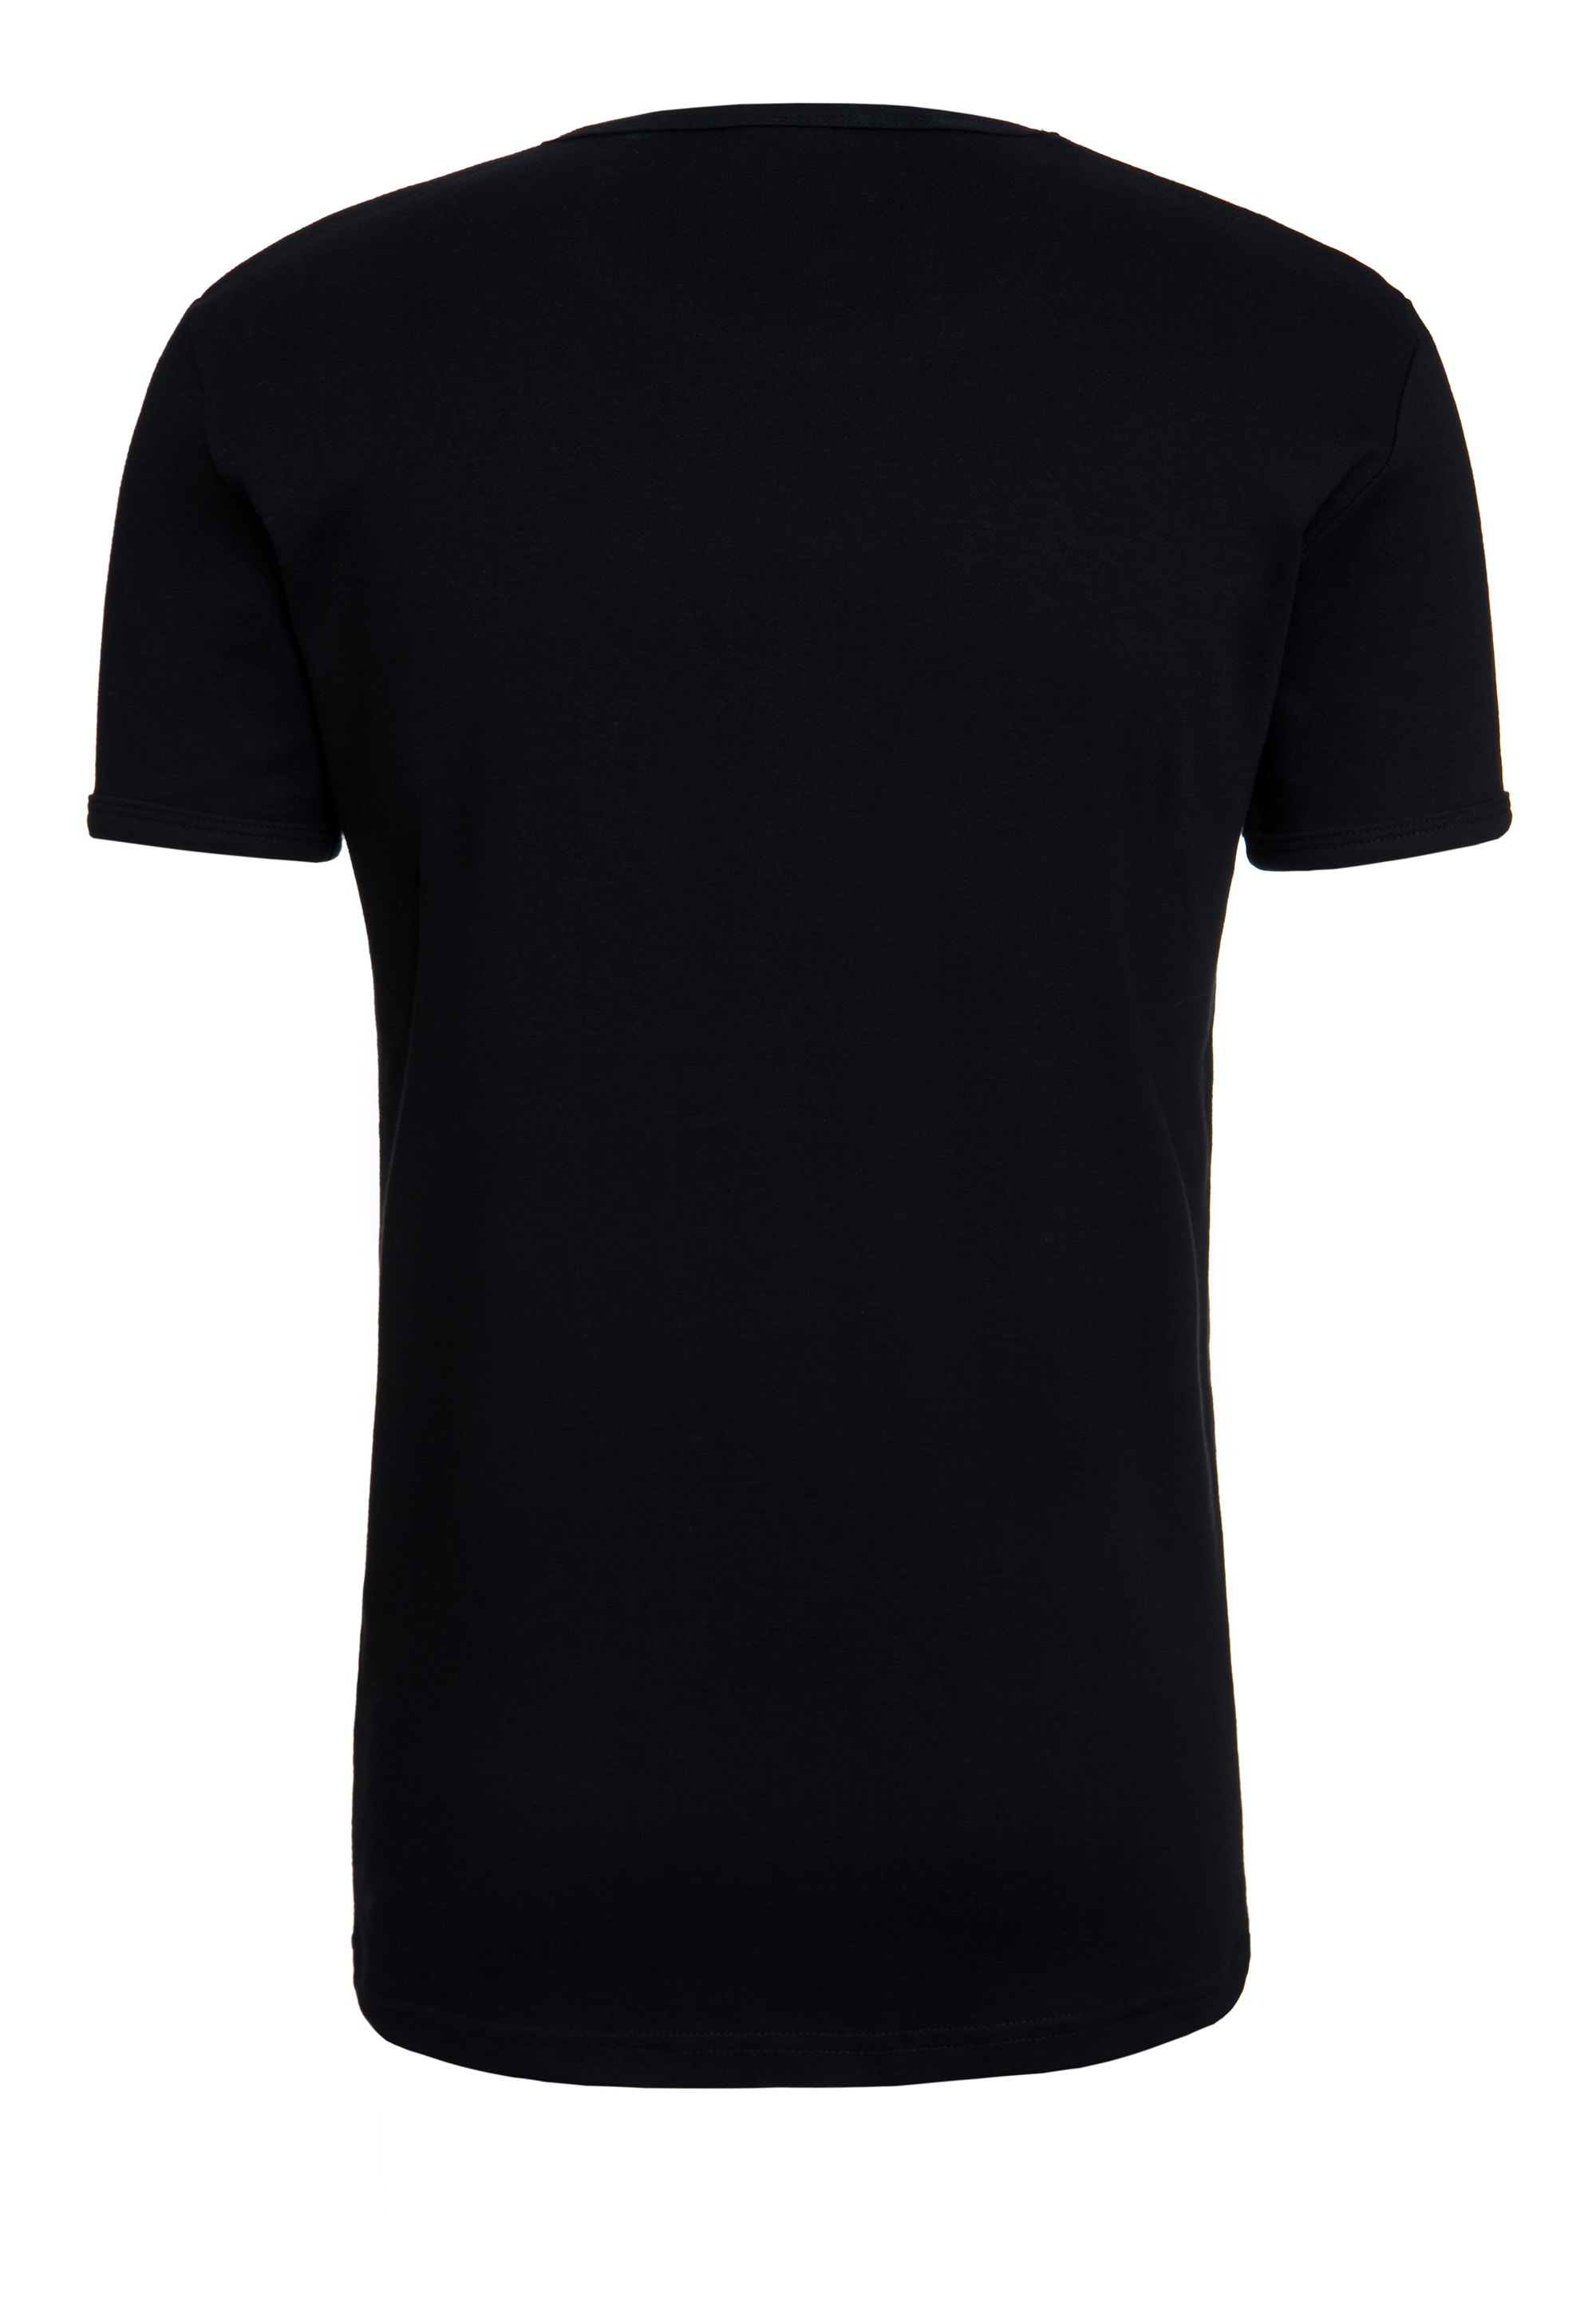 LOGOSHIRT T-Shirt »The Riddler«, mit lizenziertem Originaldesign